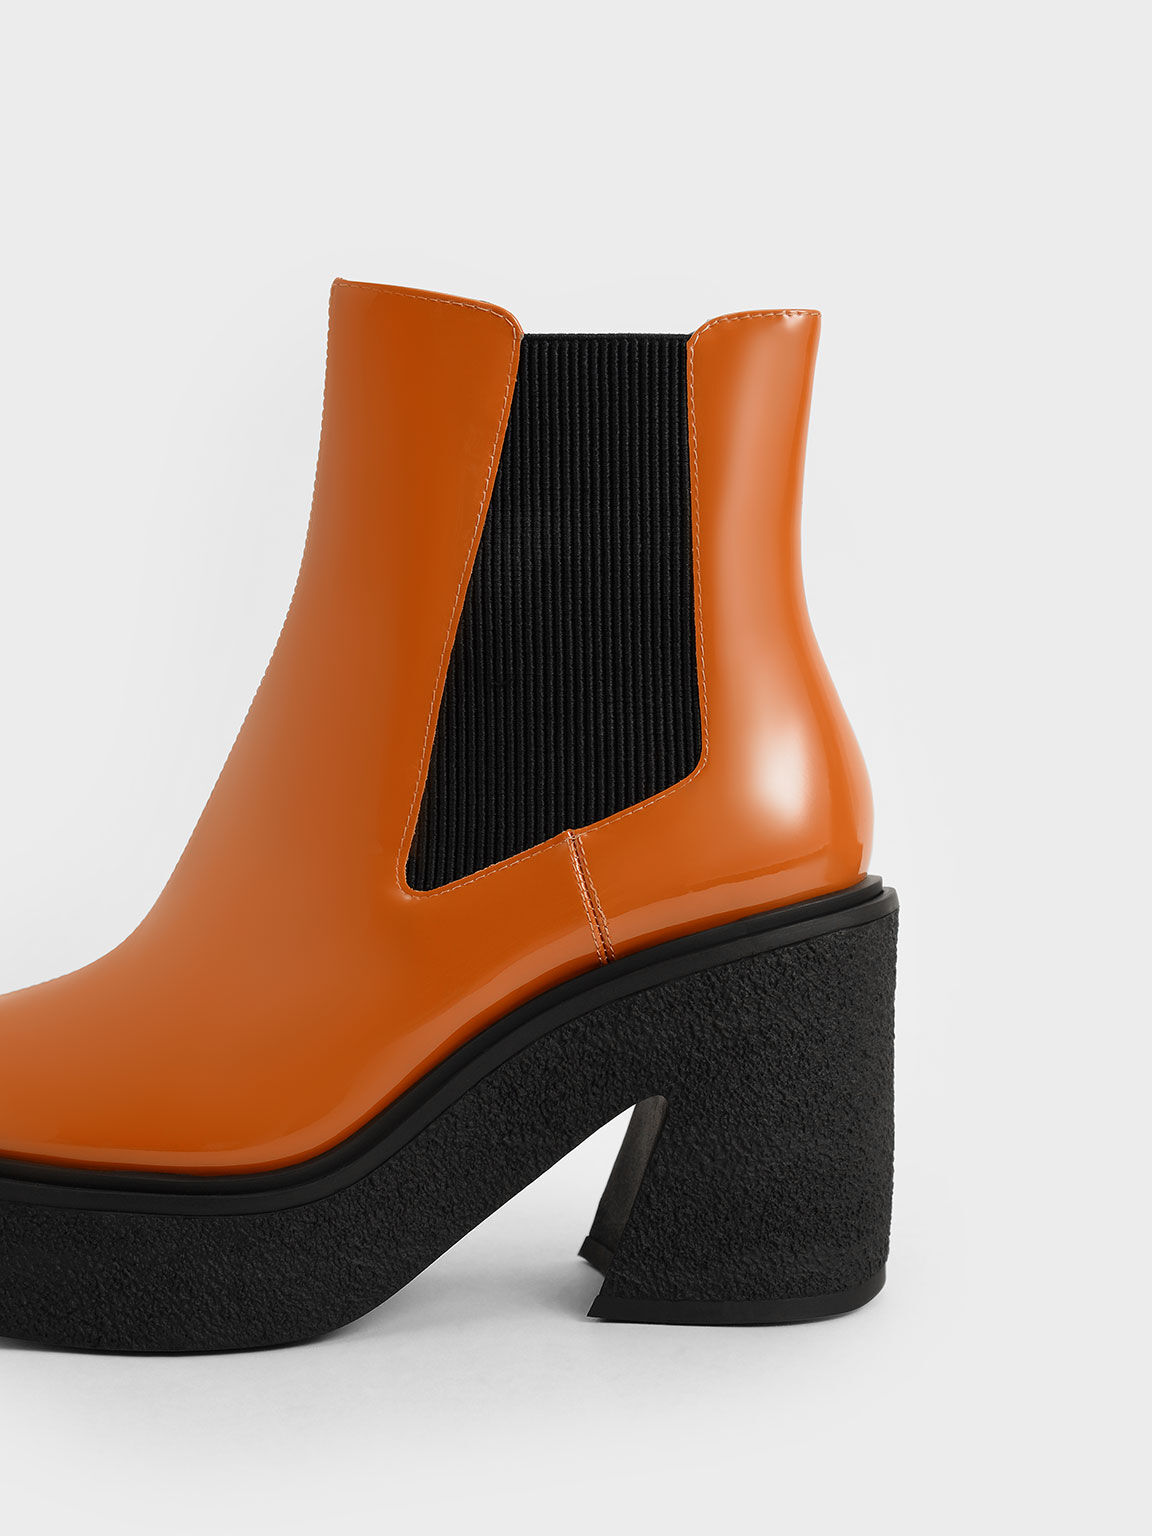 Odette Patent Leather Chelsea Platform Boots, Cognac, hi-res